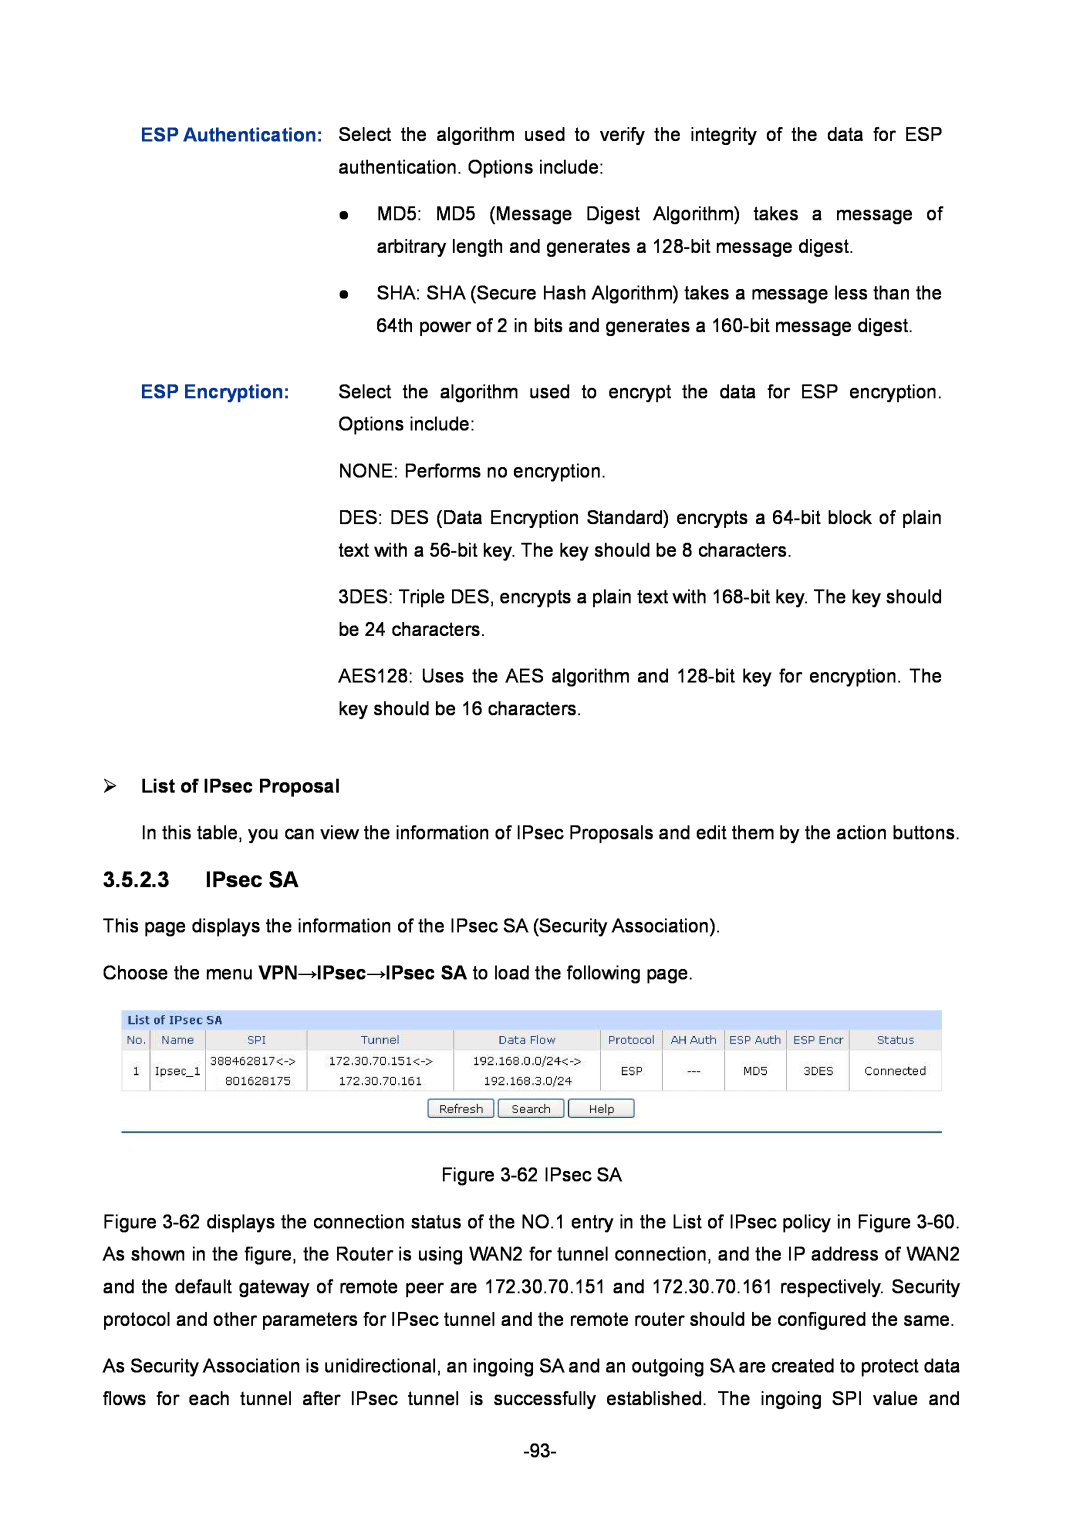 TP-Link TL-ER6020 manual IPsec SA,  List of IPsec Proposal 